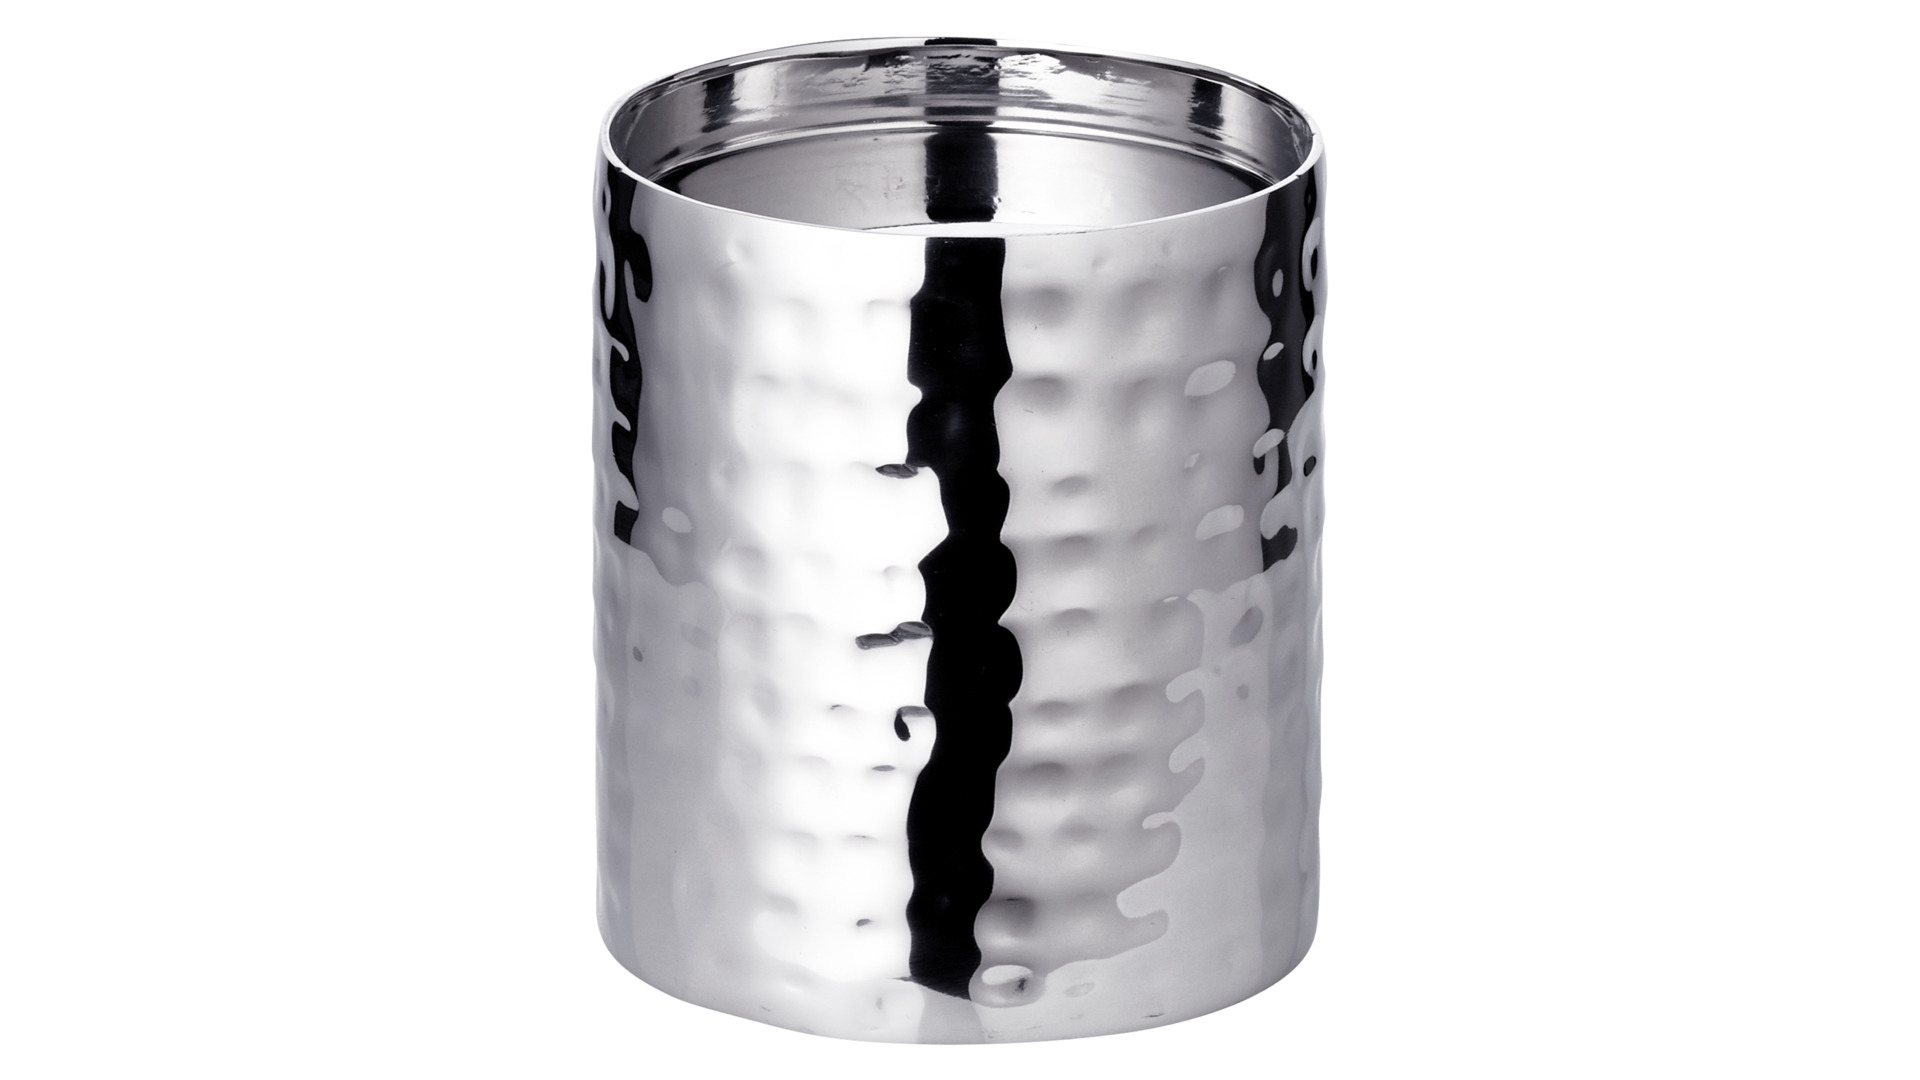 Подсвечник для интерьерной свечи Edzard Агадир Д8,5хН10 см, для свечи 8 см, сталь нержавеющая